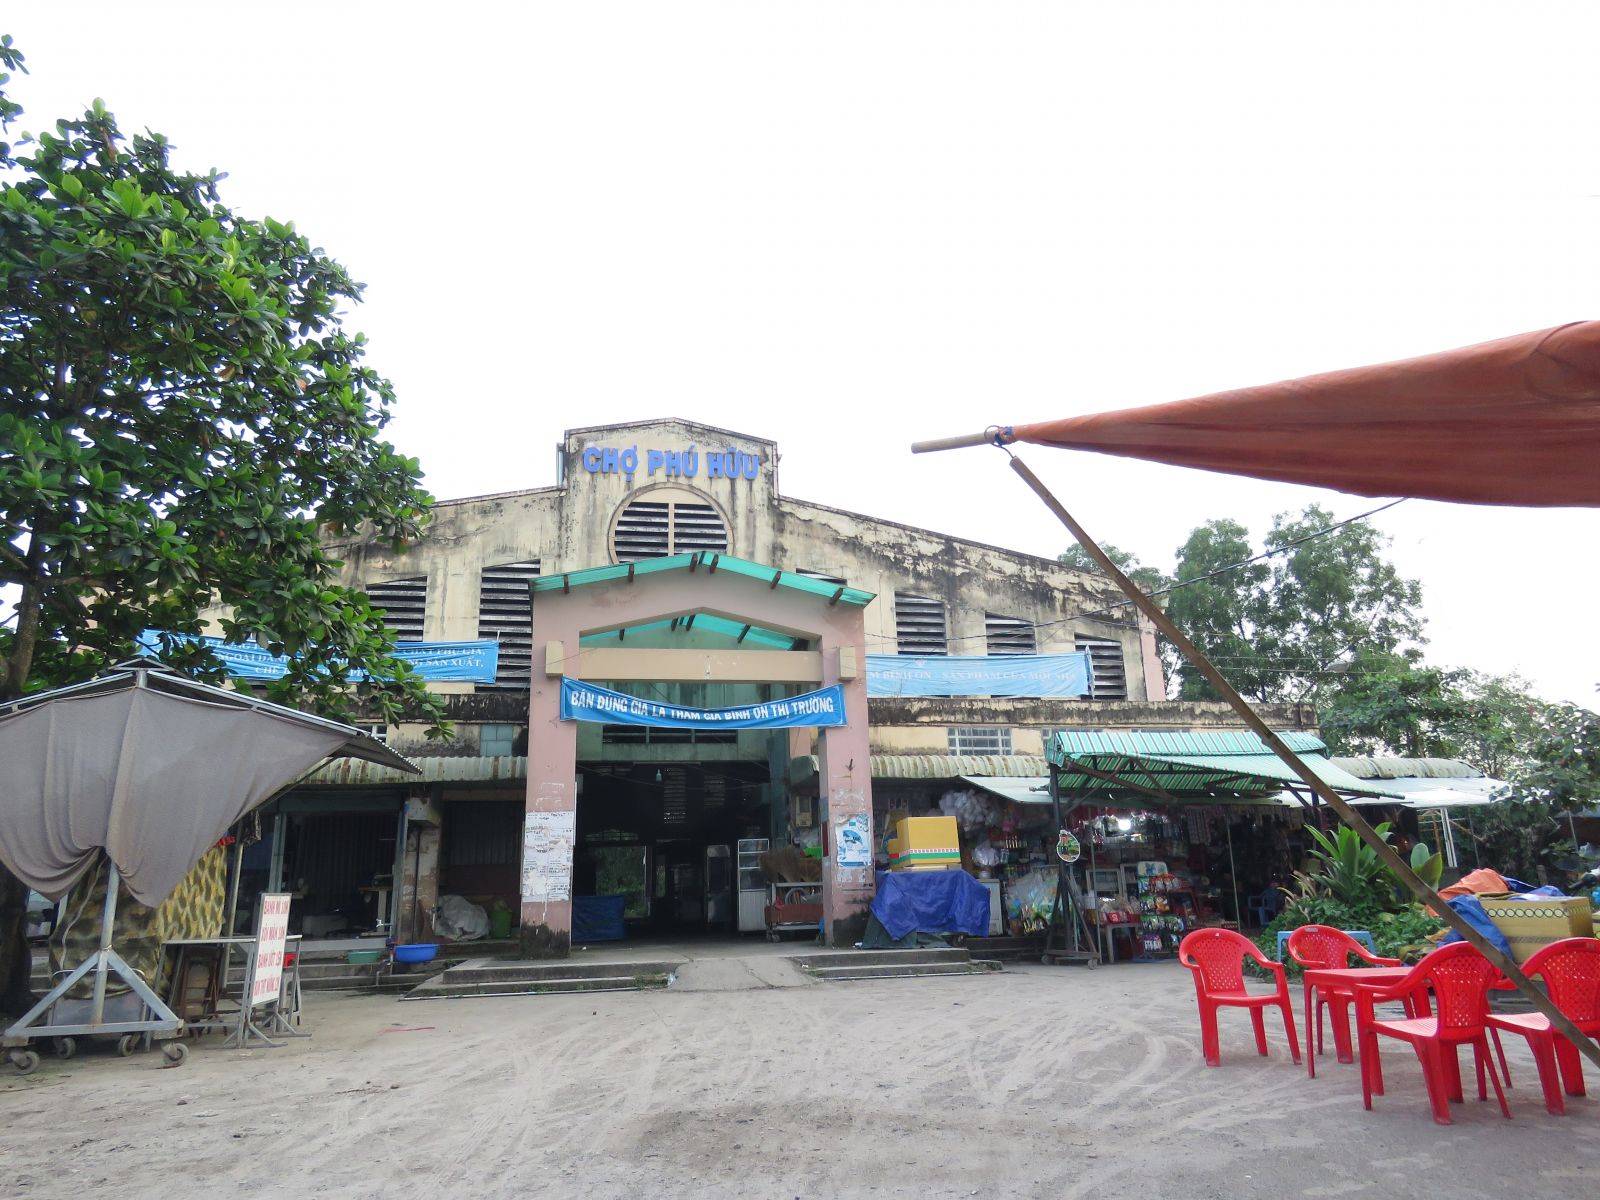 Theo đó, chợ Phú Hữu nằm cạnh đường Nguyễn Duy Trinh (phường Phú Hữu, quận 9) được xây dựng vào năm 2004, trên diện tích hơn 2.000m2 với kinh phí 1,2 tỷ đồng gồm 164 ki-ốt.